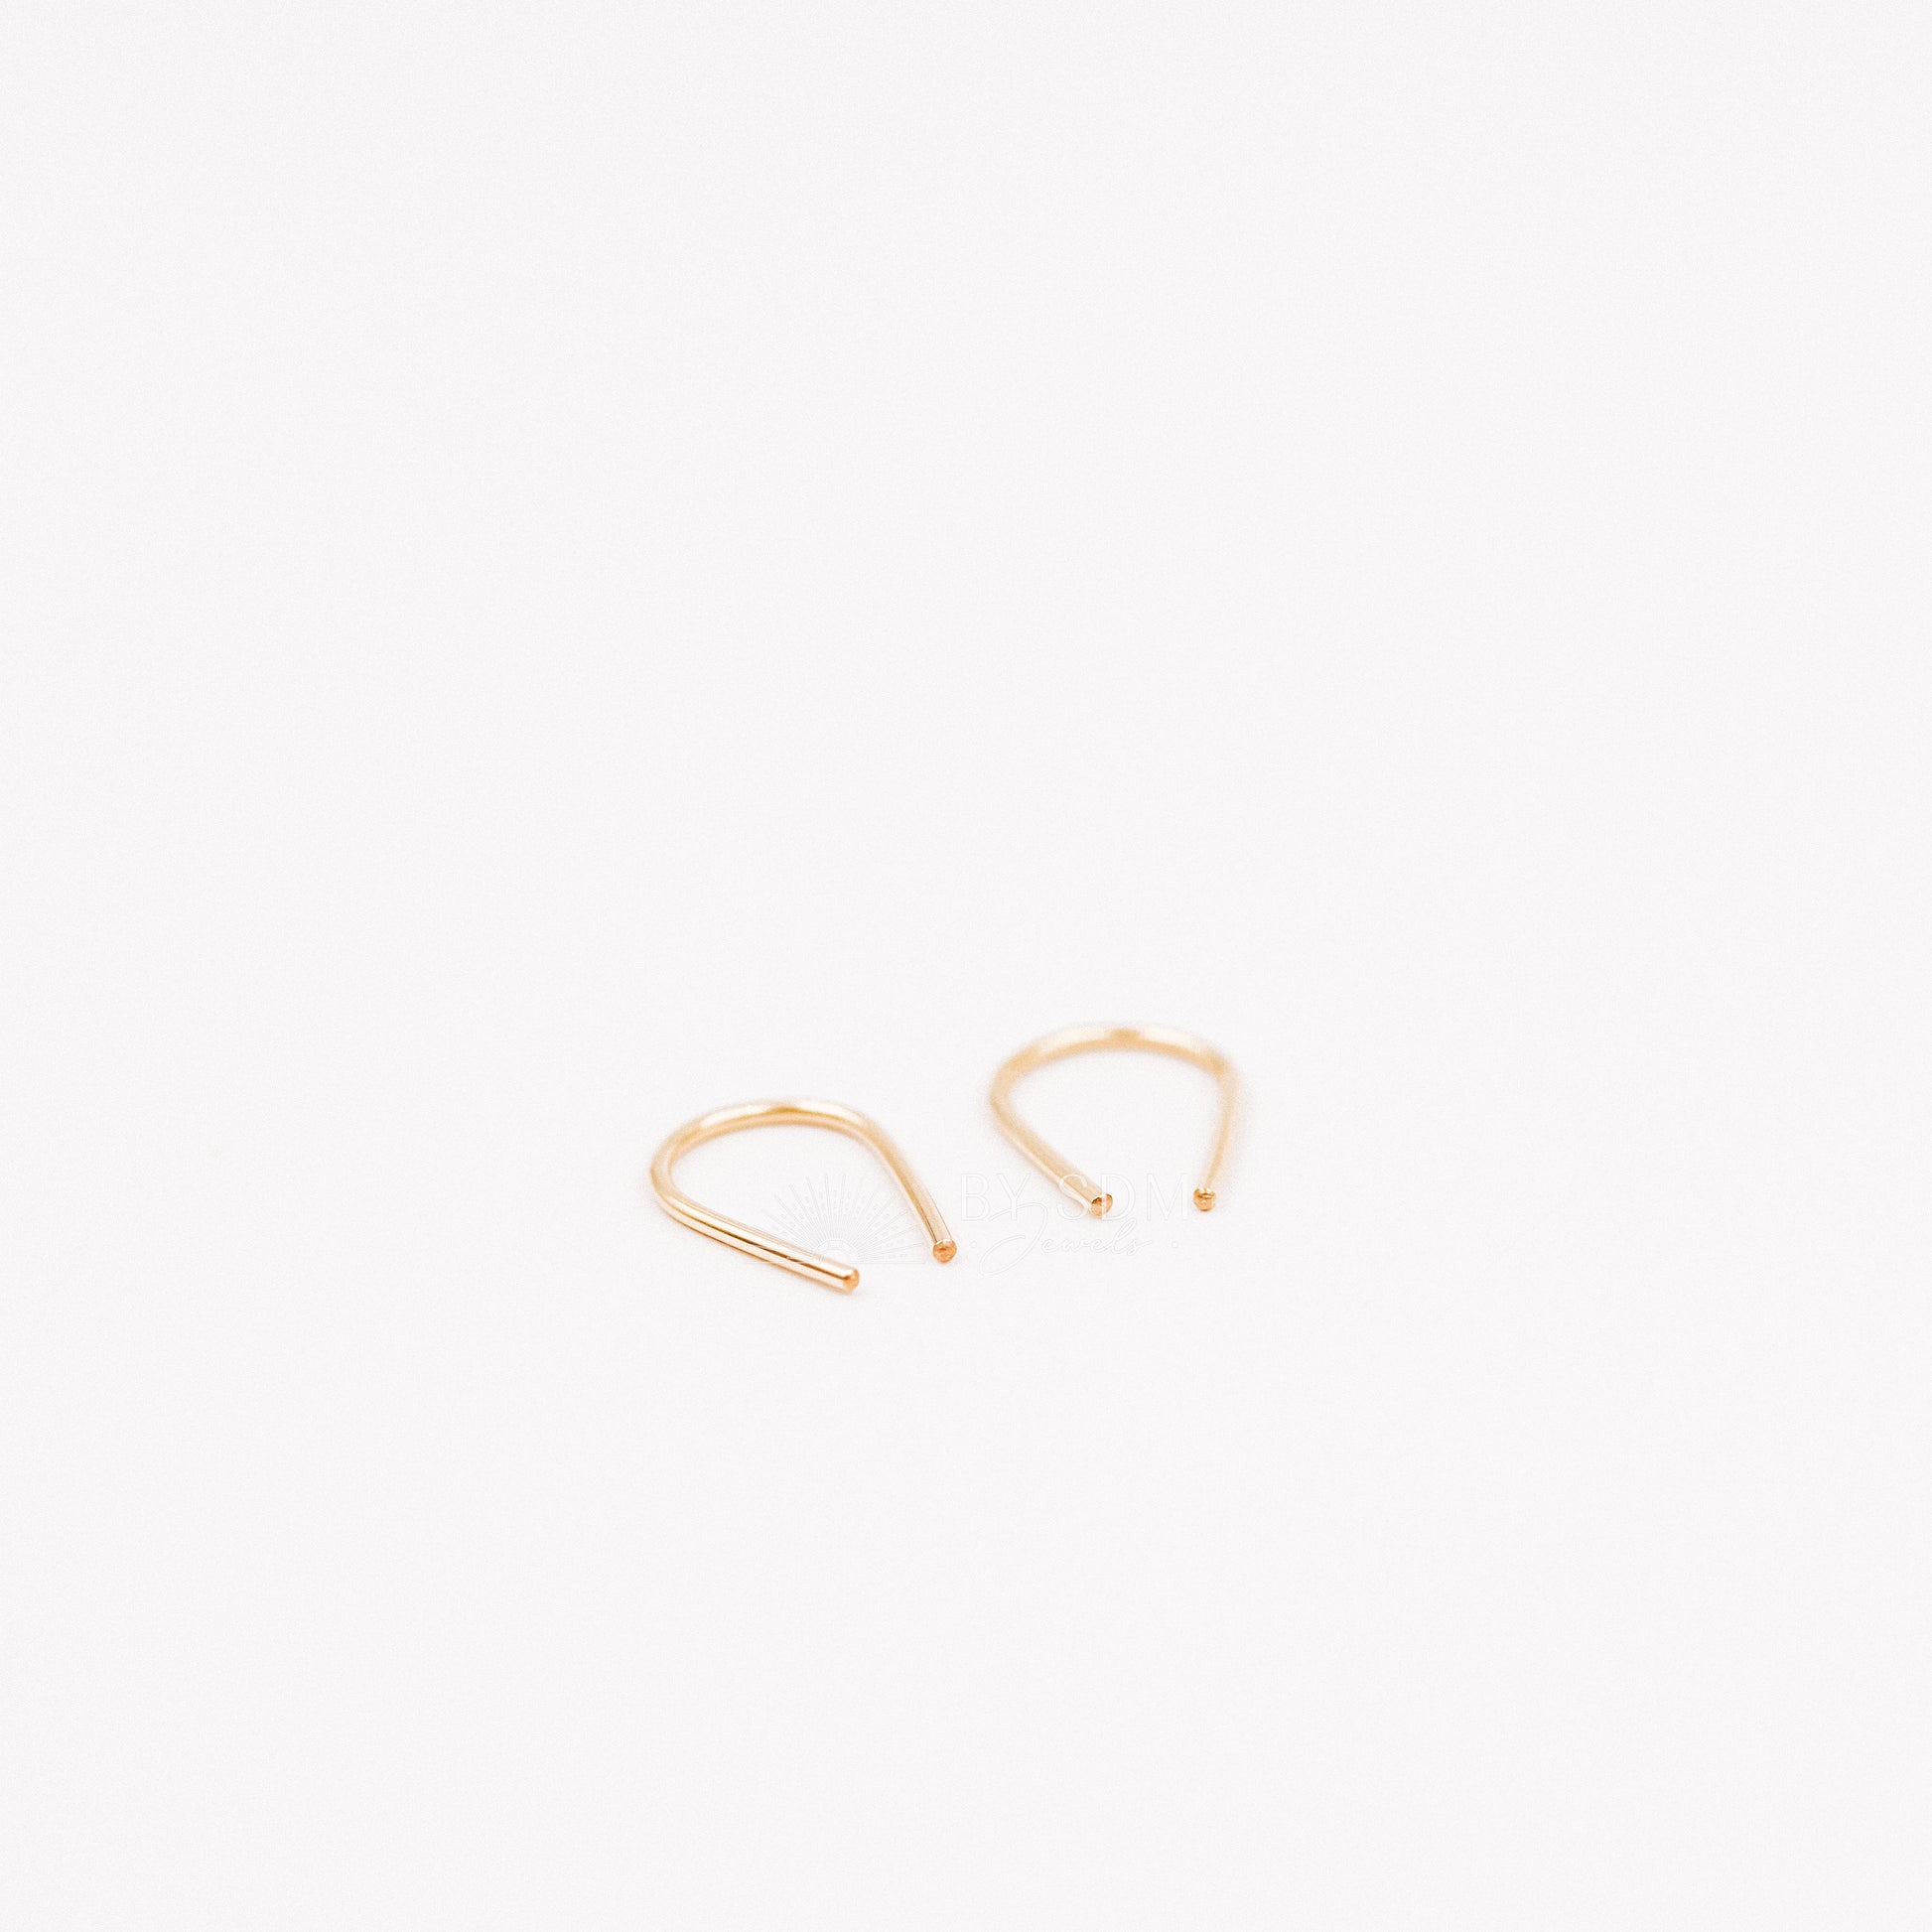 Gold Arc Earrings • Gold Filled Earrings • Gold U Earrings • Minimalist Earrings • Dainty Earrings • Open Hoop Earrings • Silver Earrings